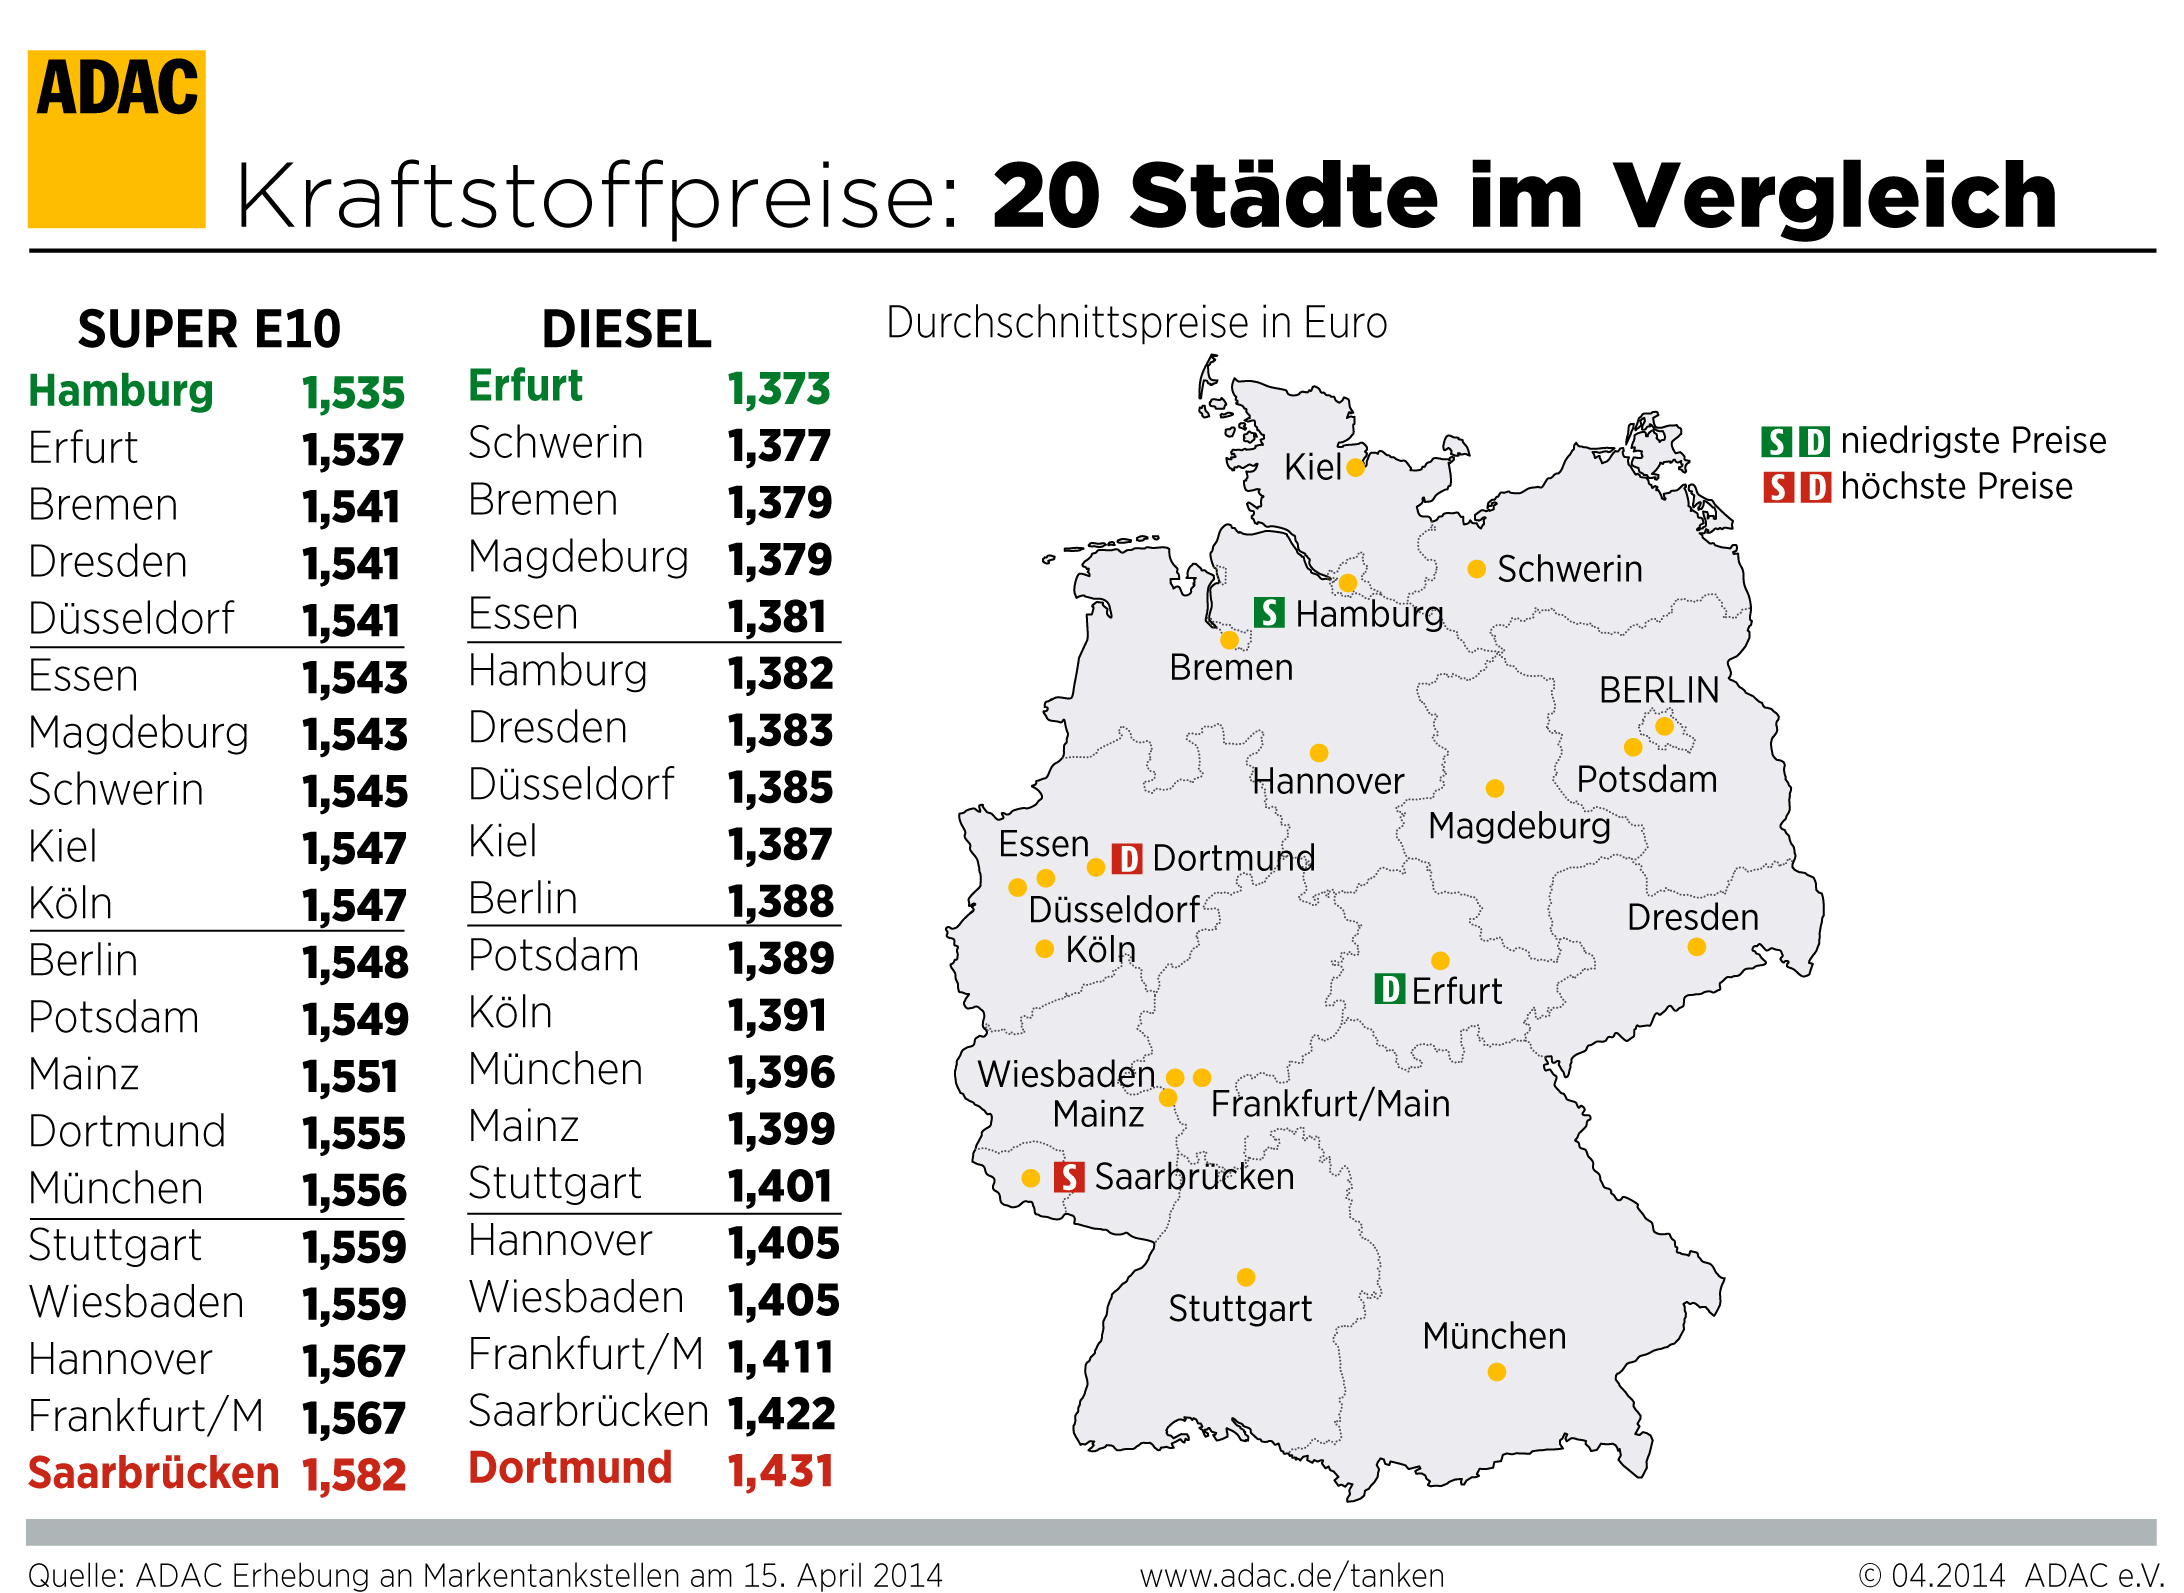 In Saarbrücken müssen die Autofahrer für Benzin am tiefsten in die Tasche greifen. Das ergibt die aktuelle ADAC Auswertung der Kraftstoffpreise an Markentankstellen in 16 Landeshauptstädten.